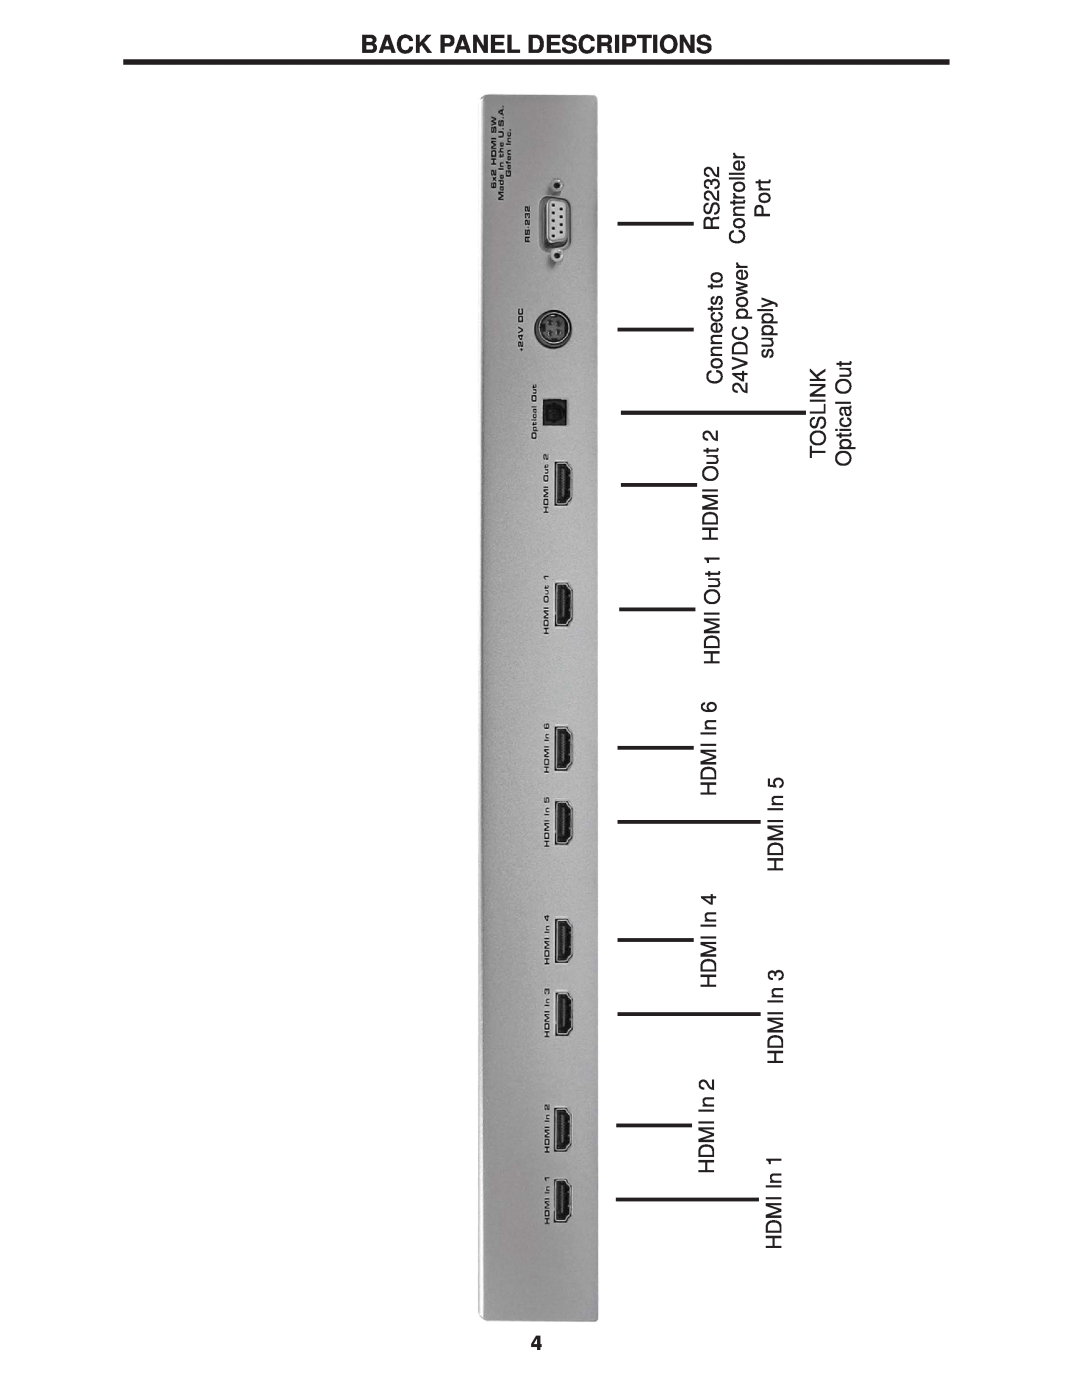 Gefen 6x2 HDMI user manual Back Panel Descriptions, RS232 